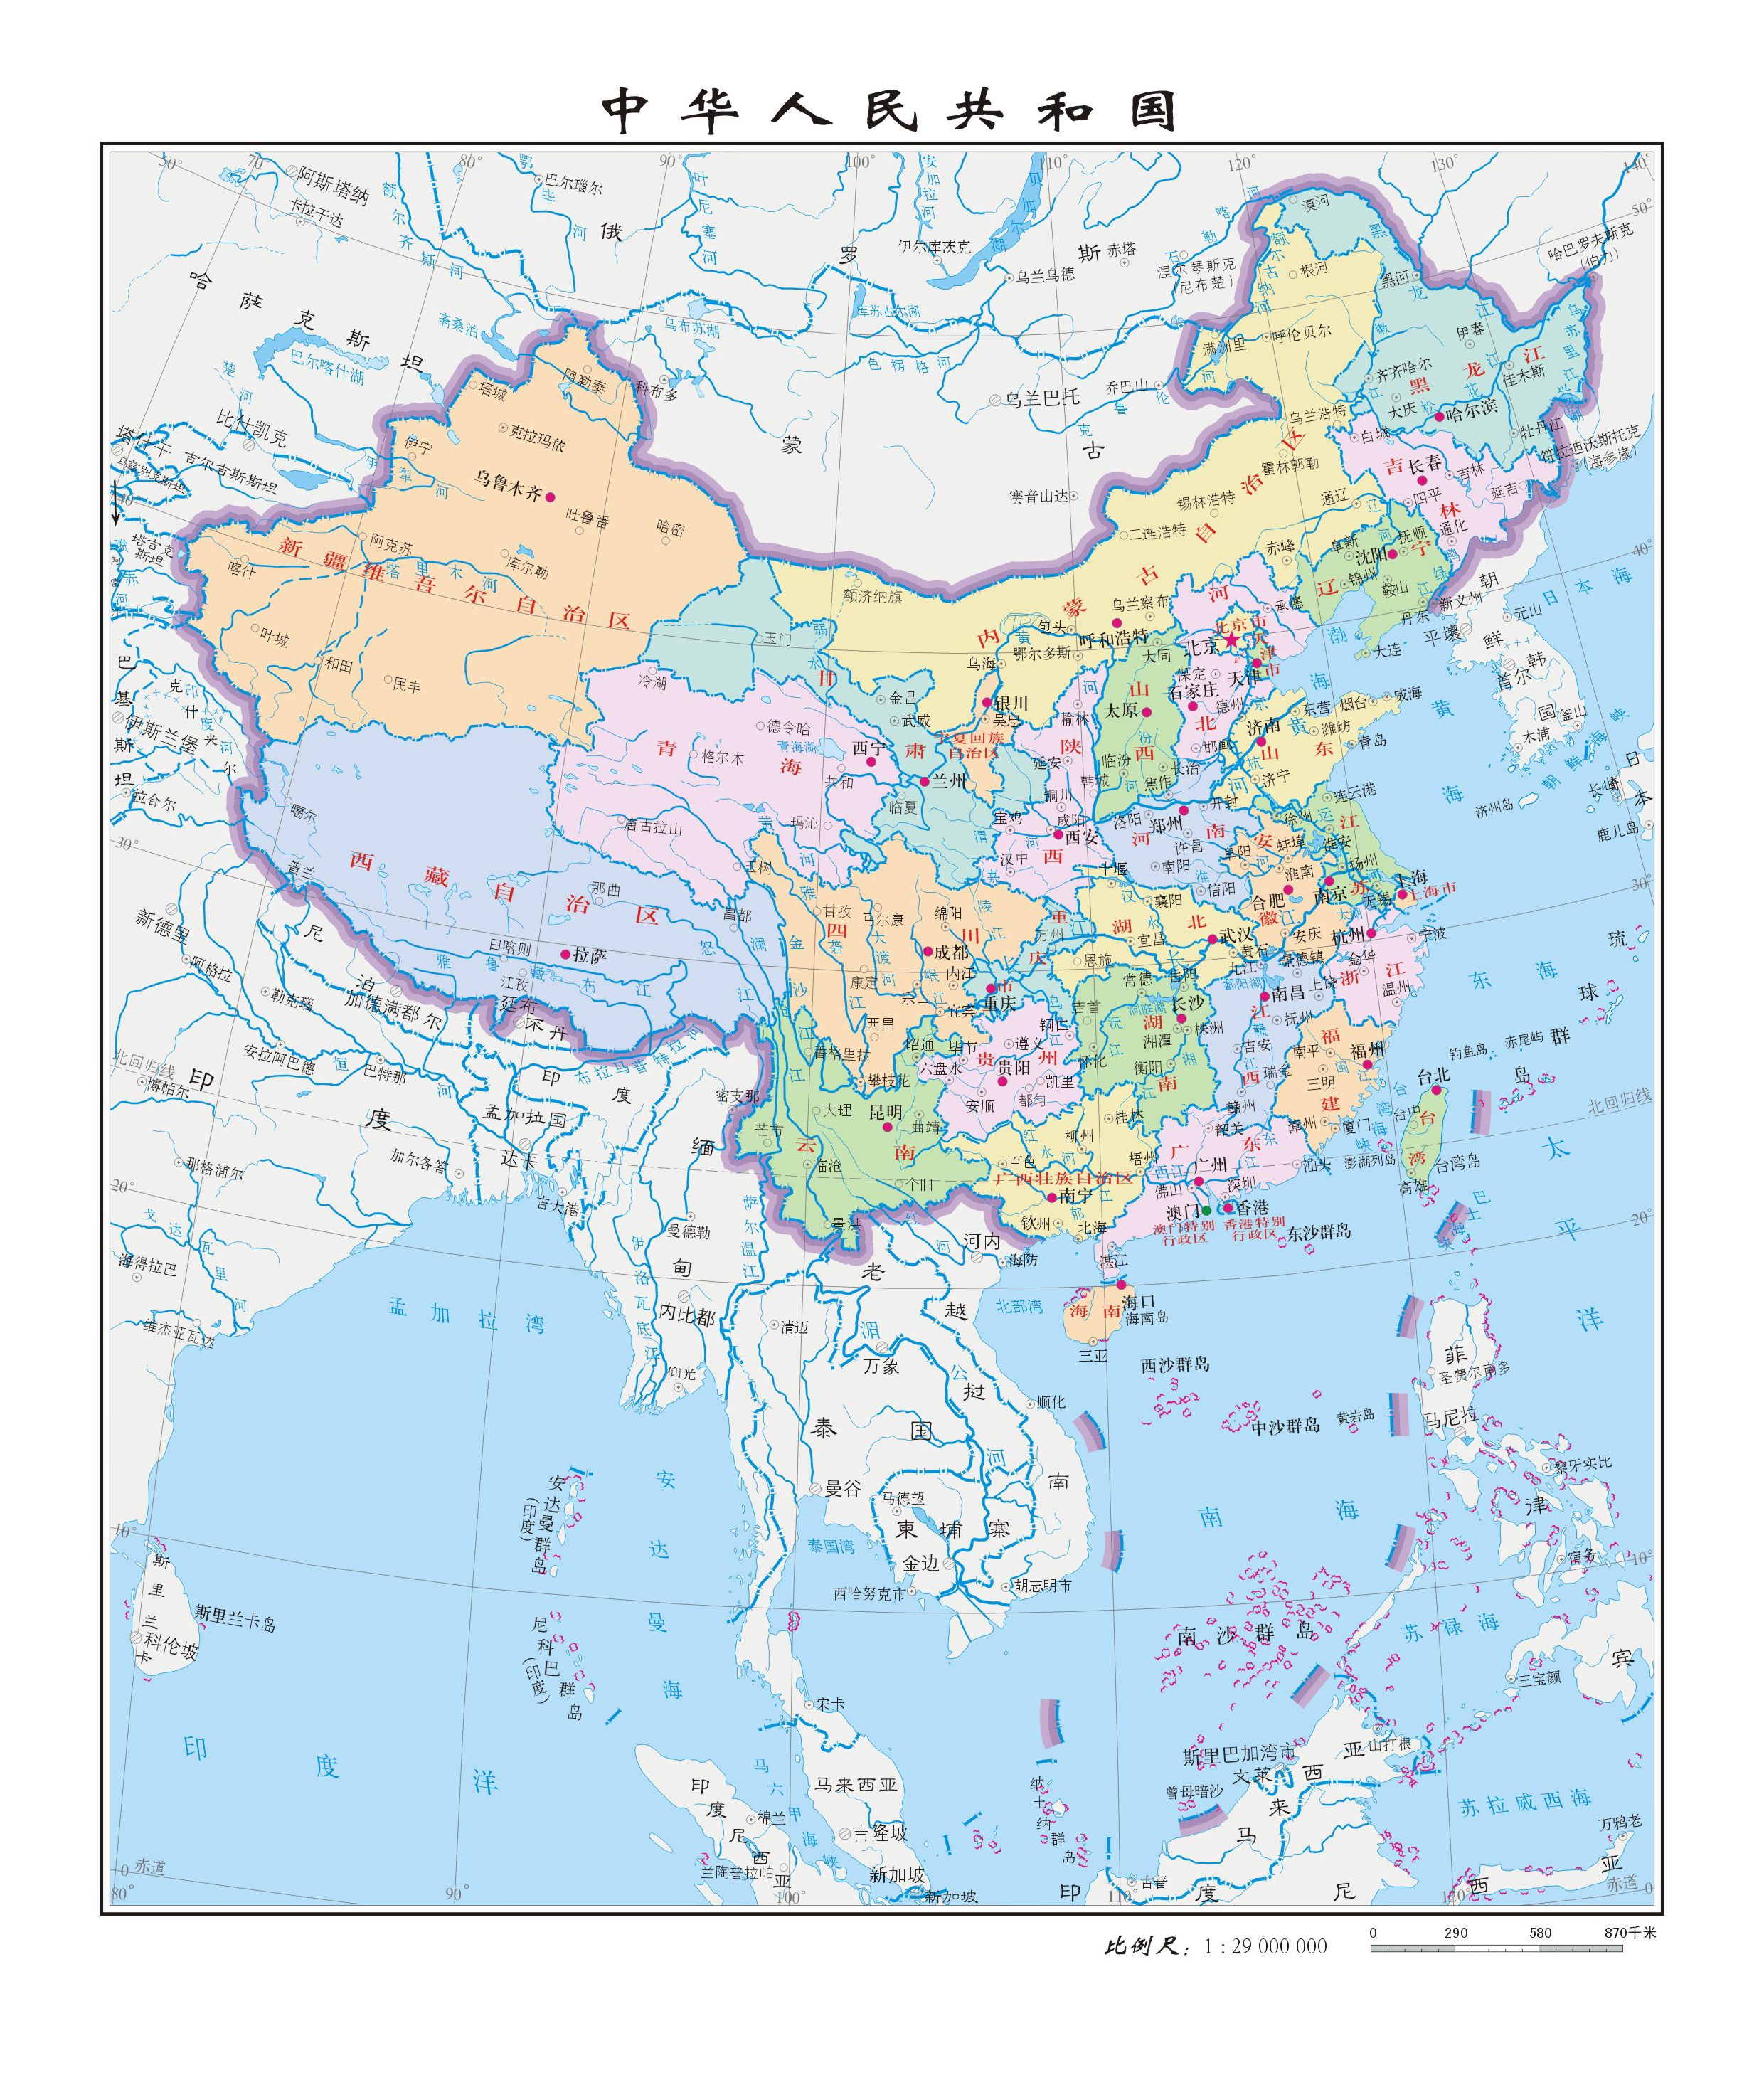 省级行政区划为4个直辖市,23个省,5个自治区,2个特别行政区,首都北京.图片